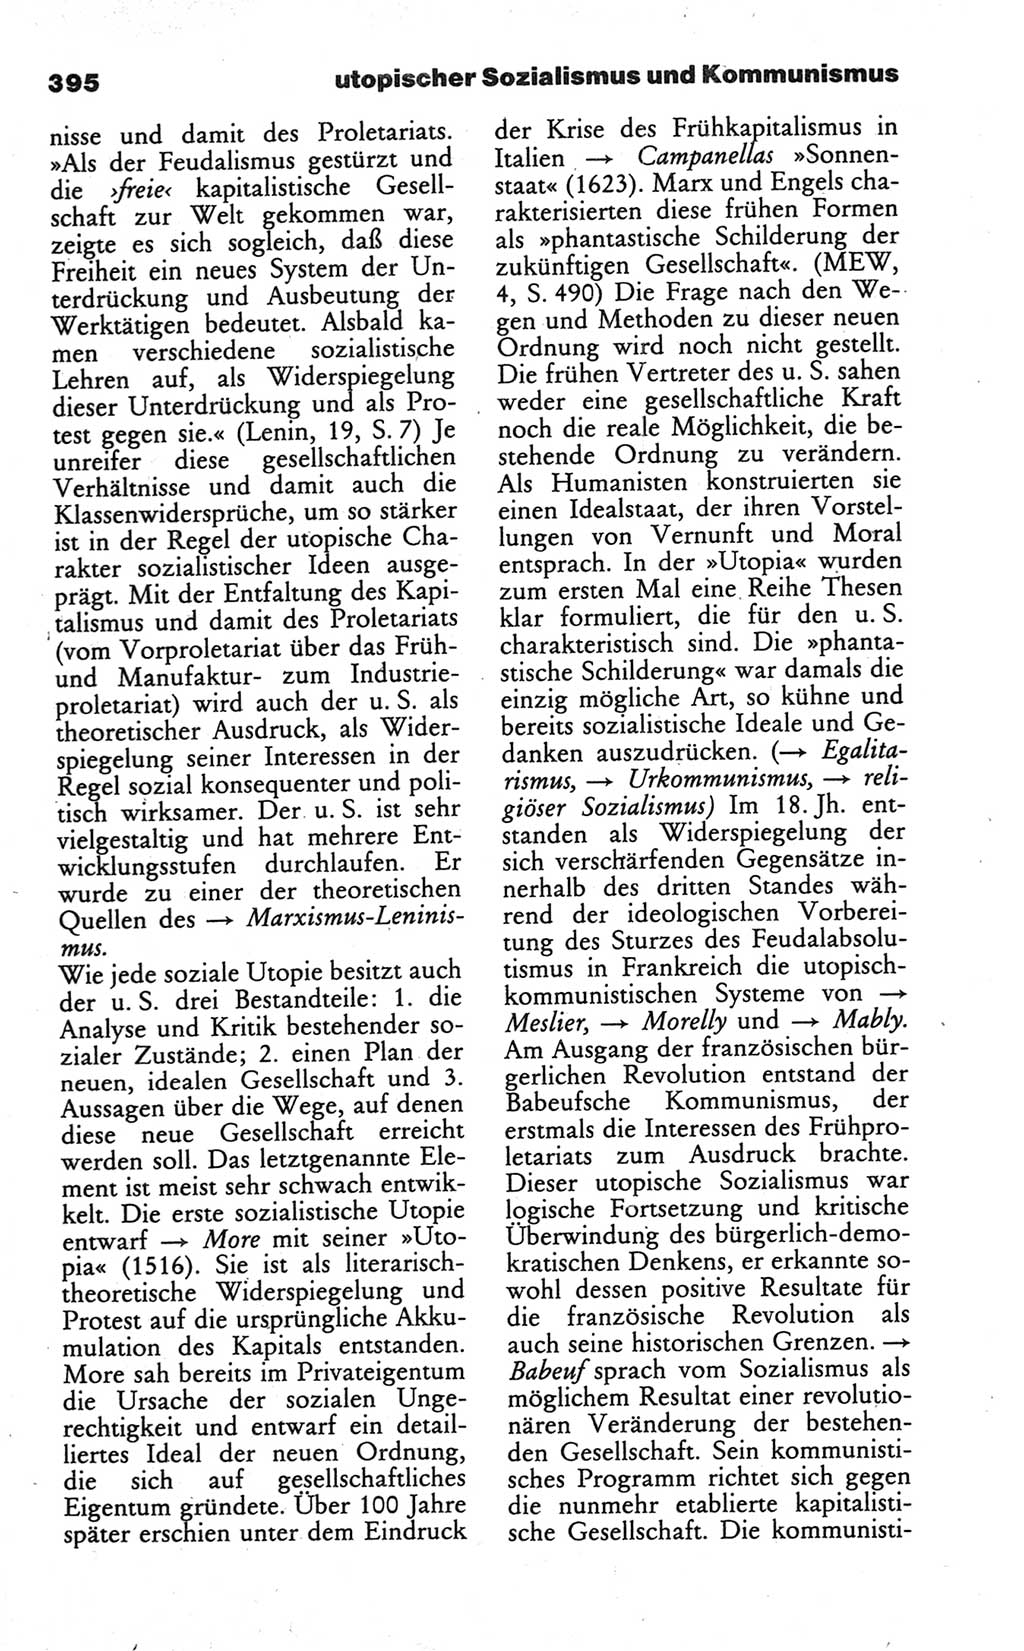 Wörterbuch des wissenschaftlichen Kommunismus [Deutsche Demokratische Republik (DDR)] 1984, Seite 395 (Wb. wiss. Komm. DDR 1984, S. 395)